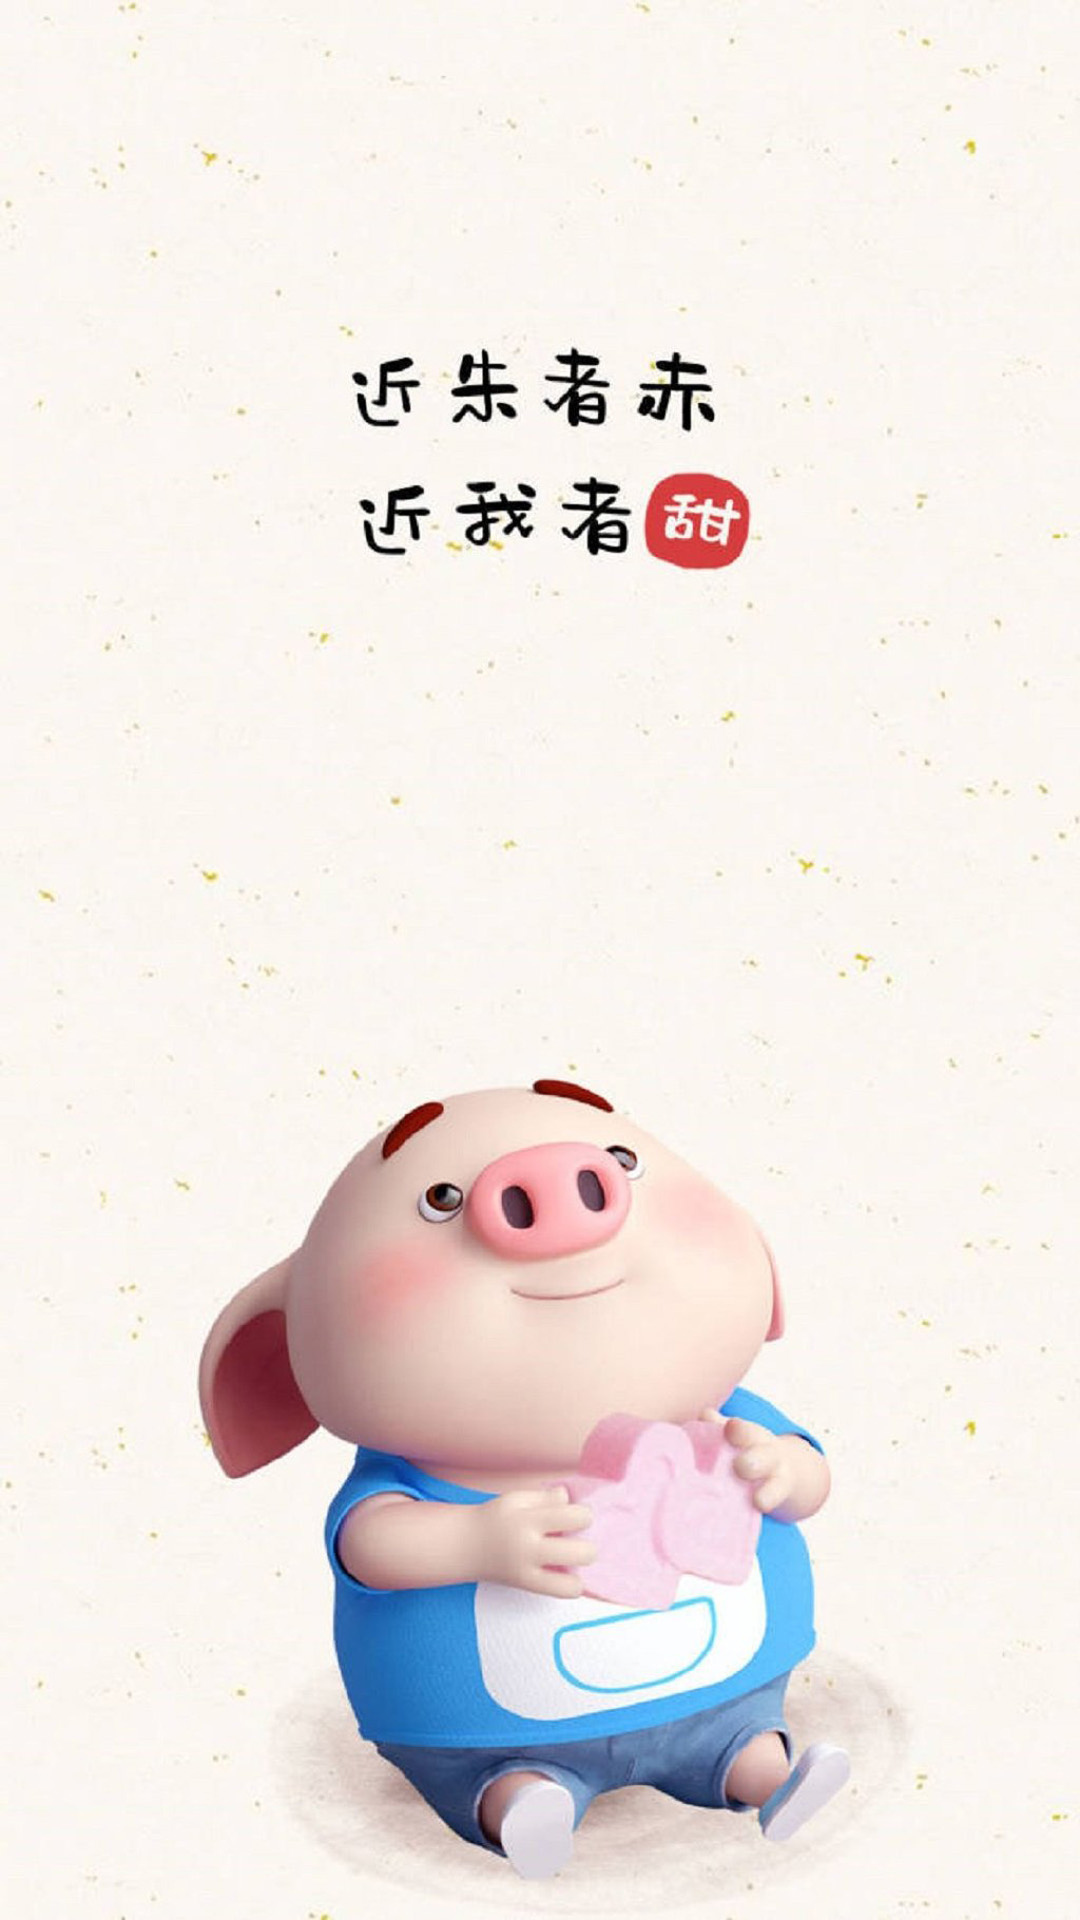 apk小游戏2019猪年可爱卡通小猪图片手机壁纸安卓手机壁纸高清截图4